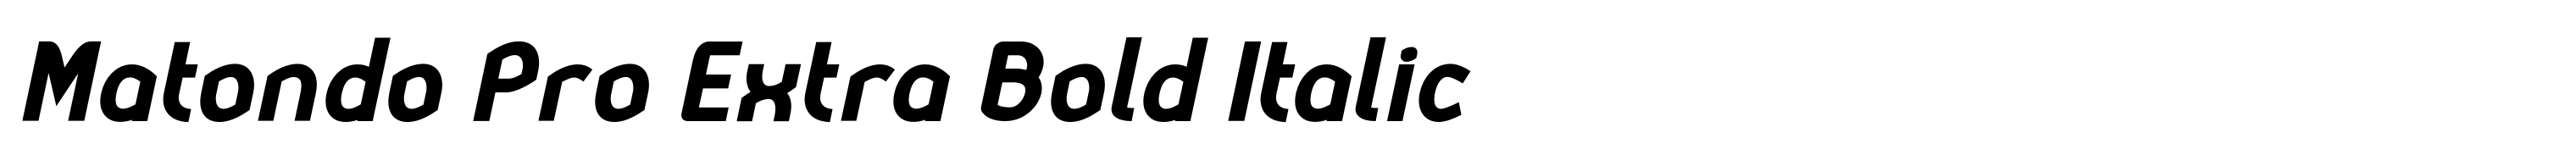 Matondo Pro Extra Bold Italic